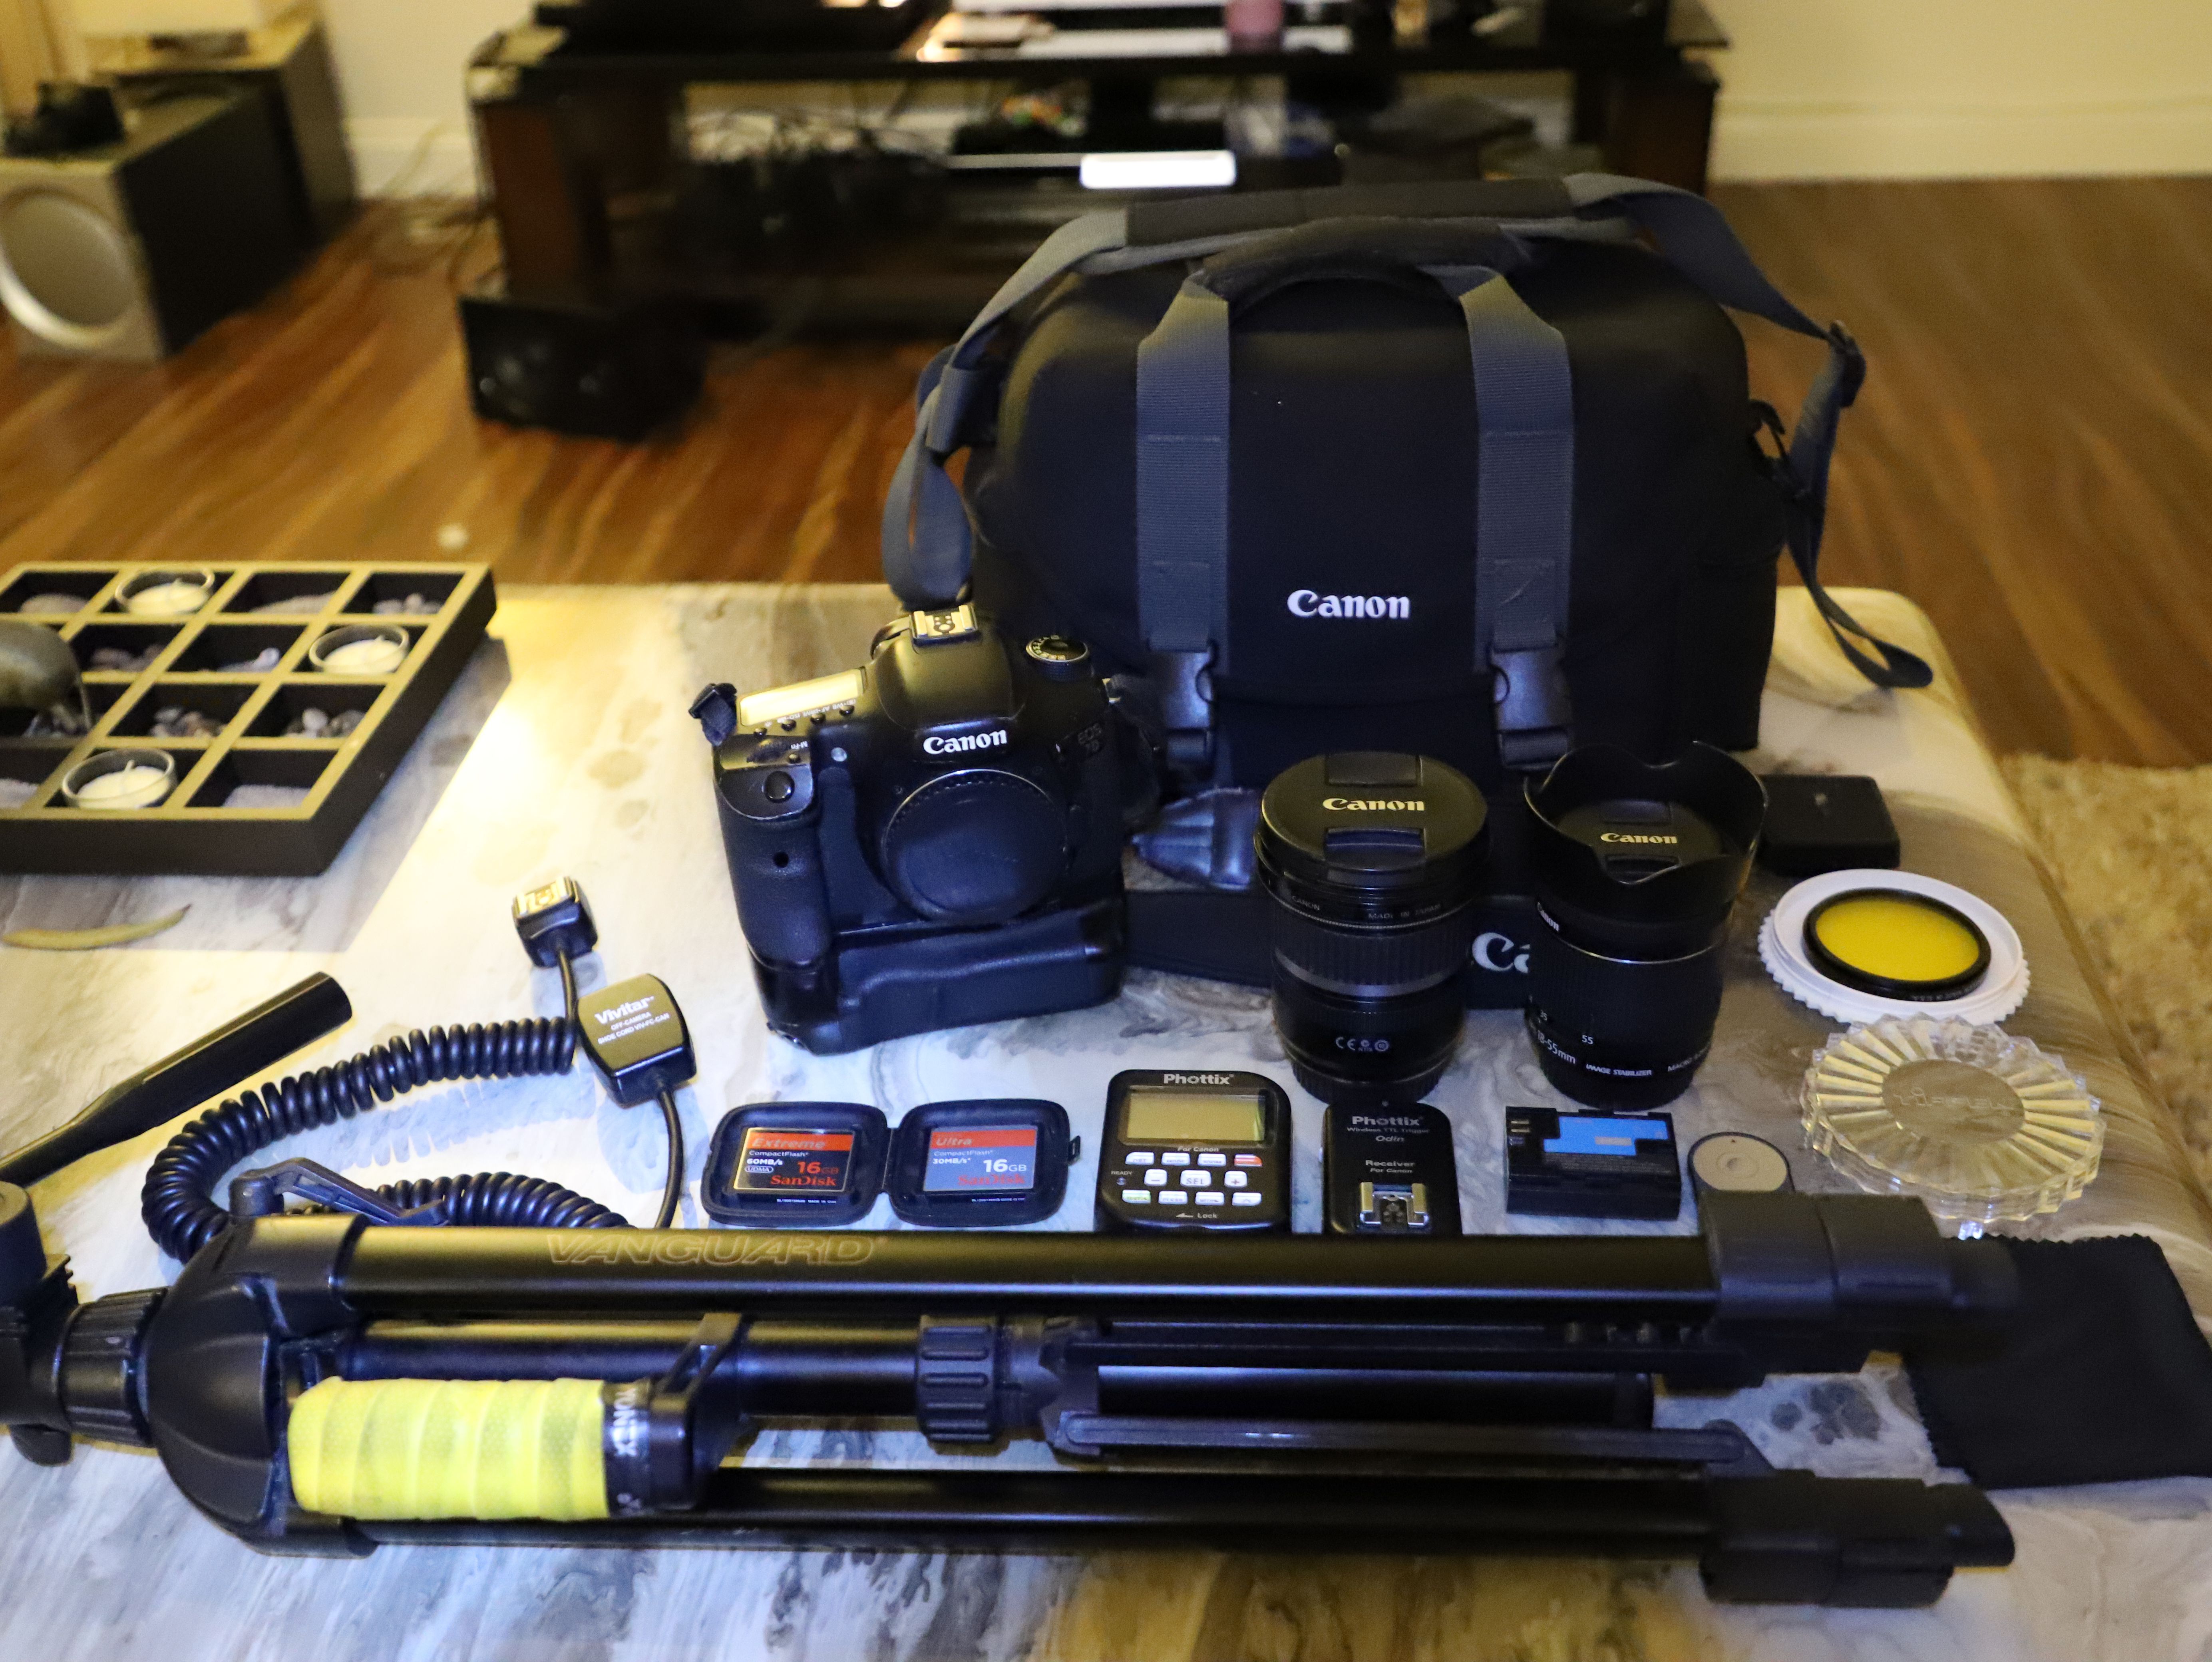 Canon 7D Digital DSL Camera Body w/ 2 Lenses, Tripod, Flash Triggers, Bag ++